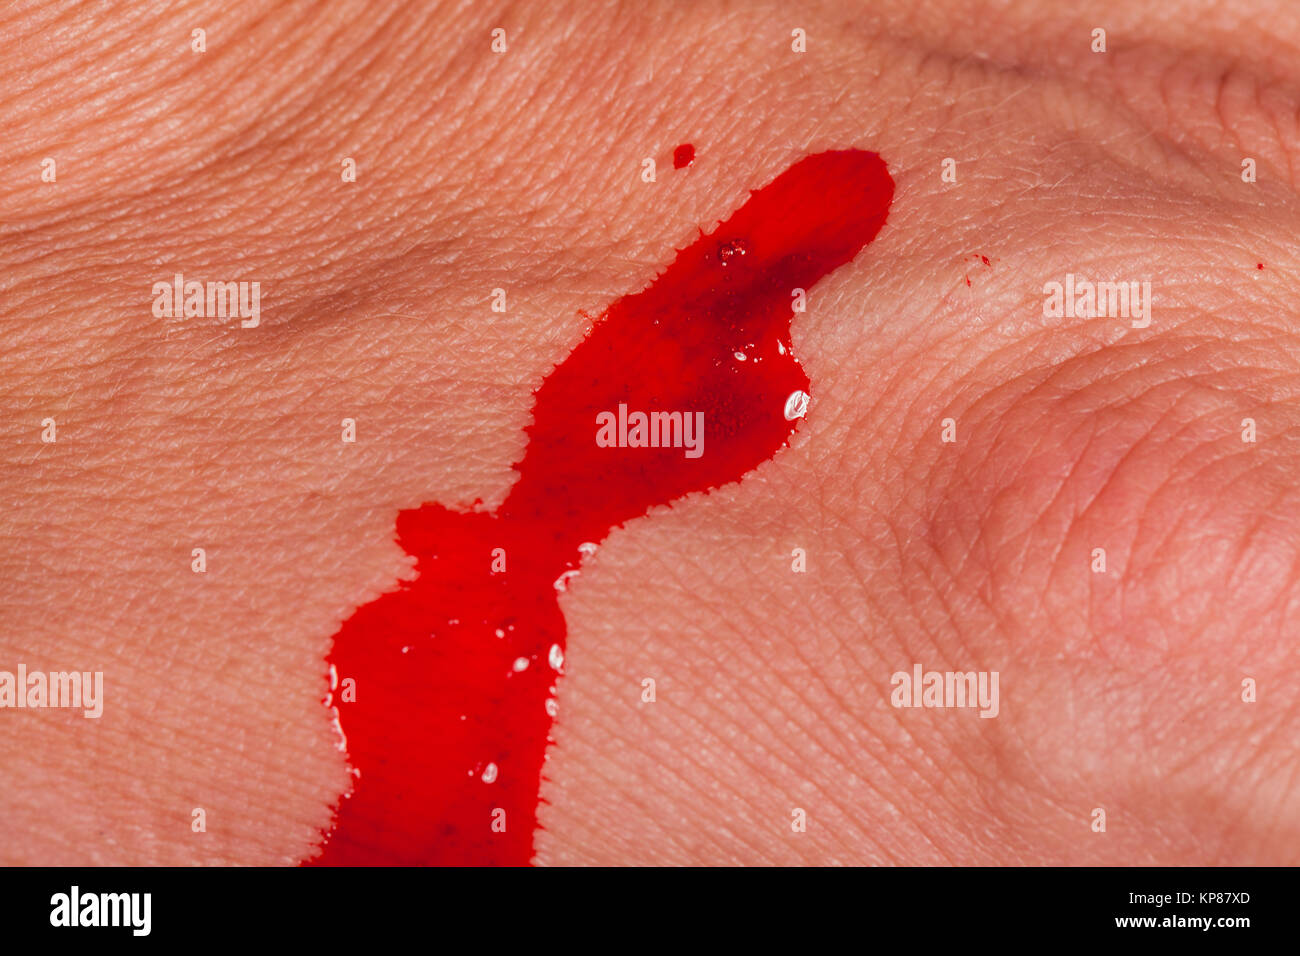 Kleine Spritze mit Nadel in der Haut Ader Vene Blut Drogen Medizin als Nahaufnahme Macro Foto Stock